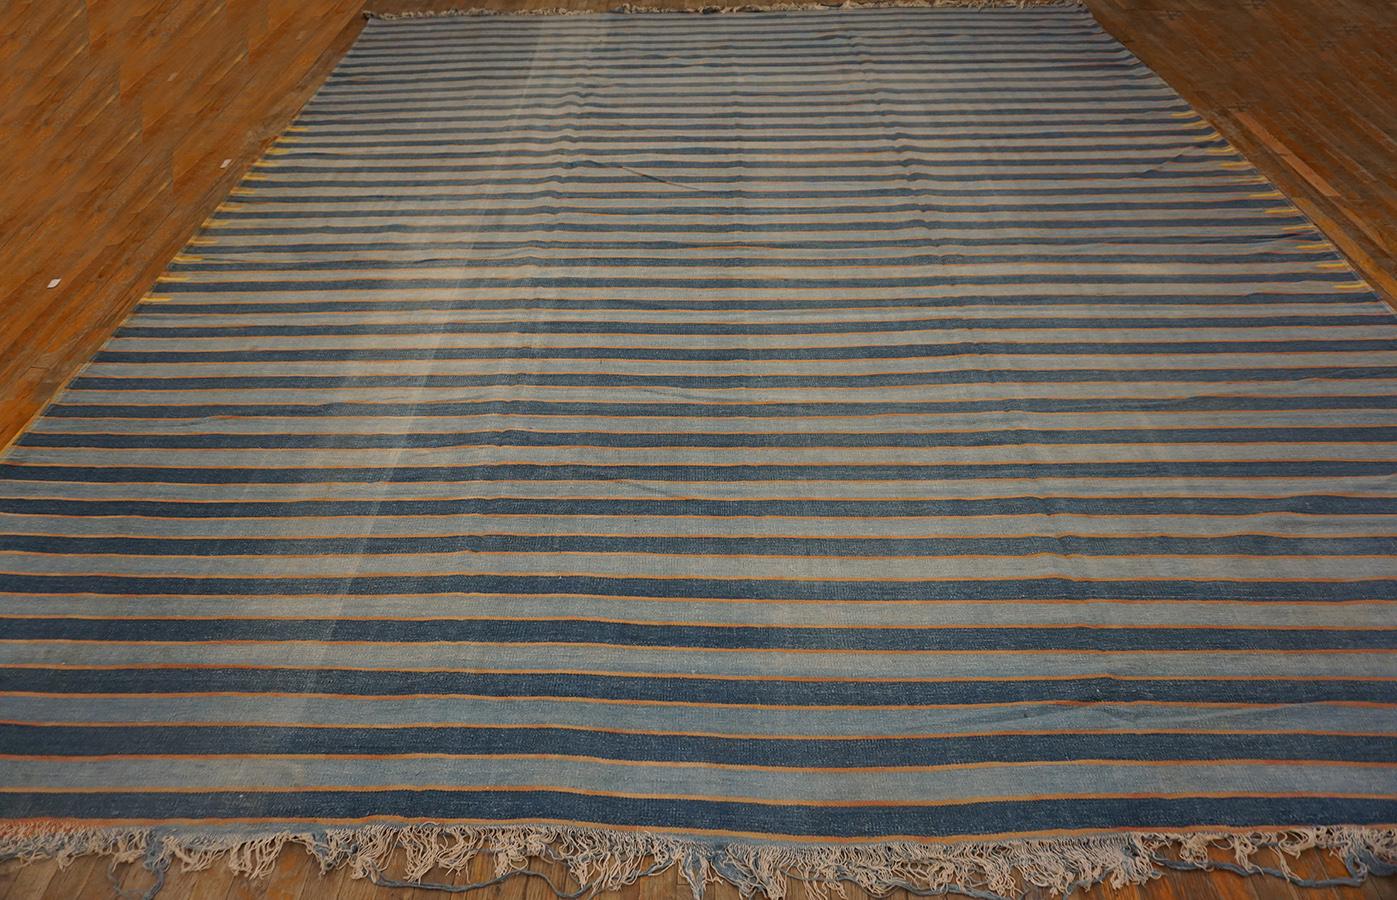 Indischer Dhurrie-Teppich aus Baumwolle des frühen 20. Jahrhunderts (12' x 14'4'' - 366 x 436)